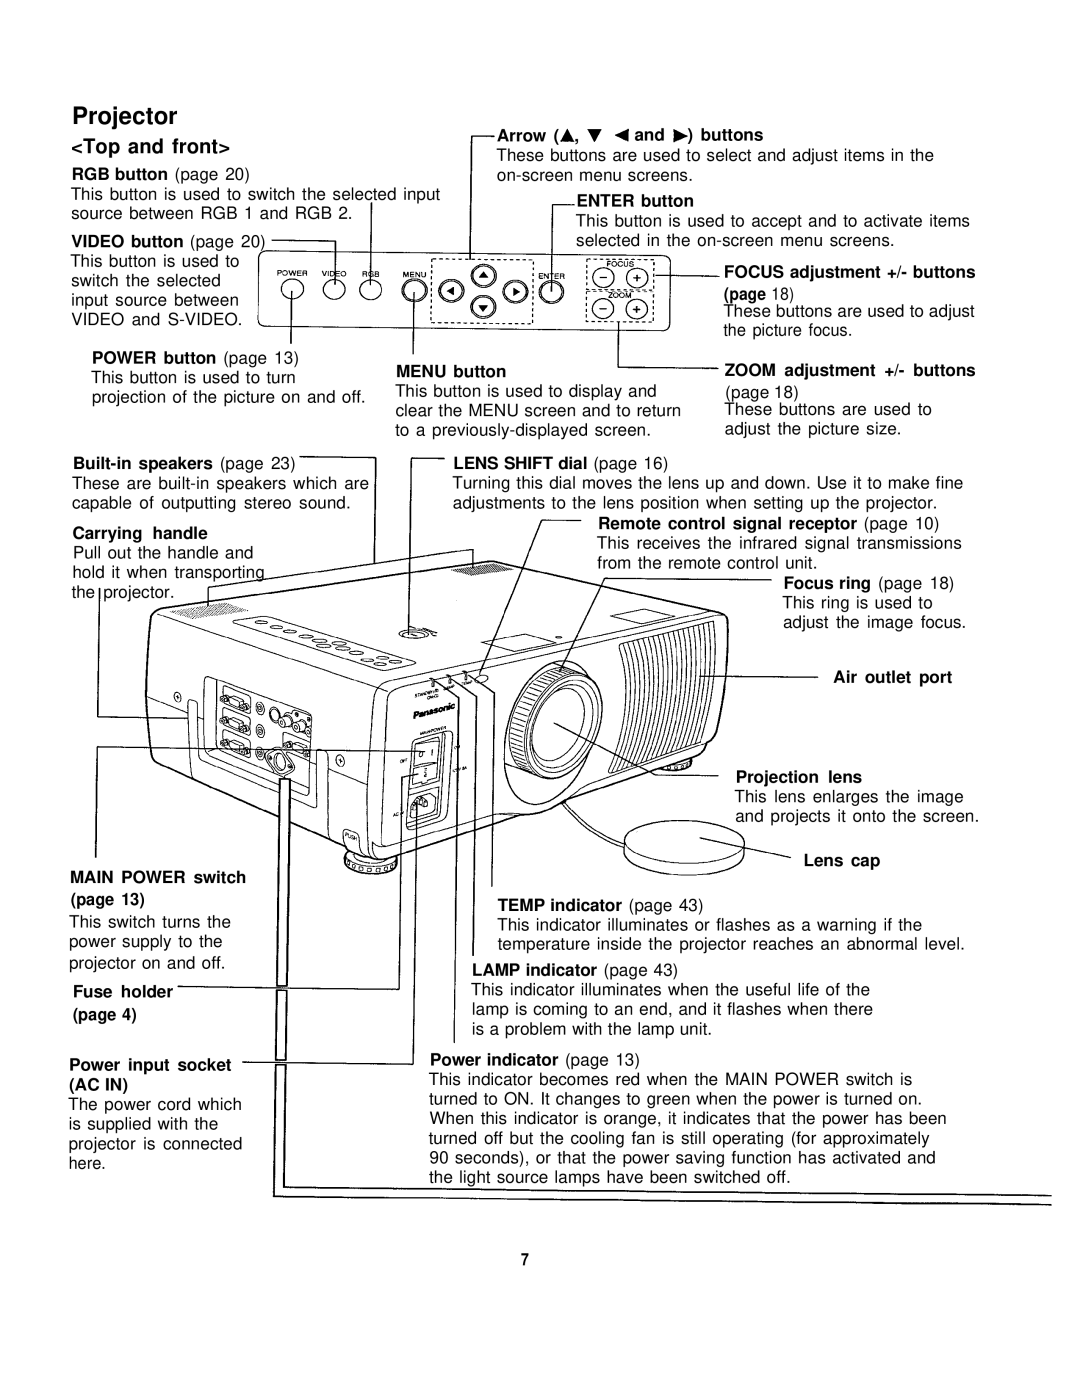 Panasonic PT-L795U manual Projector, Top and front 